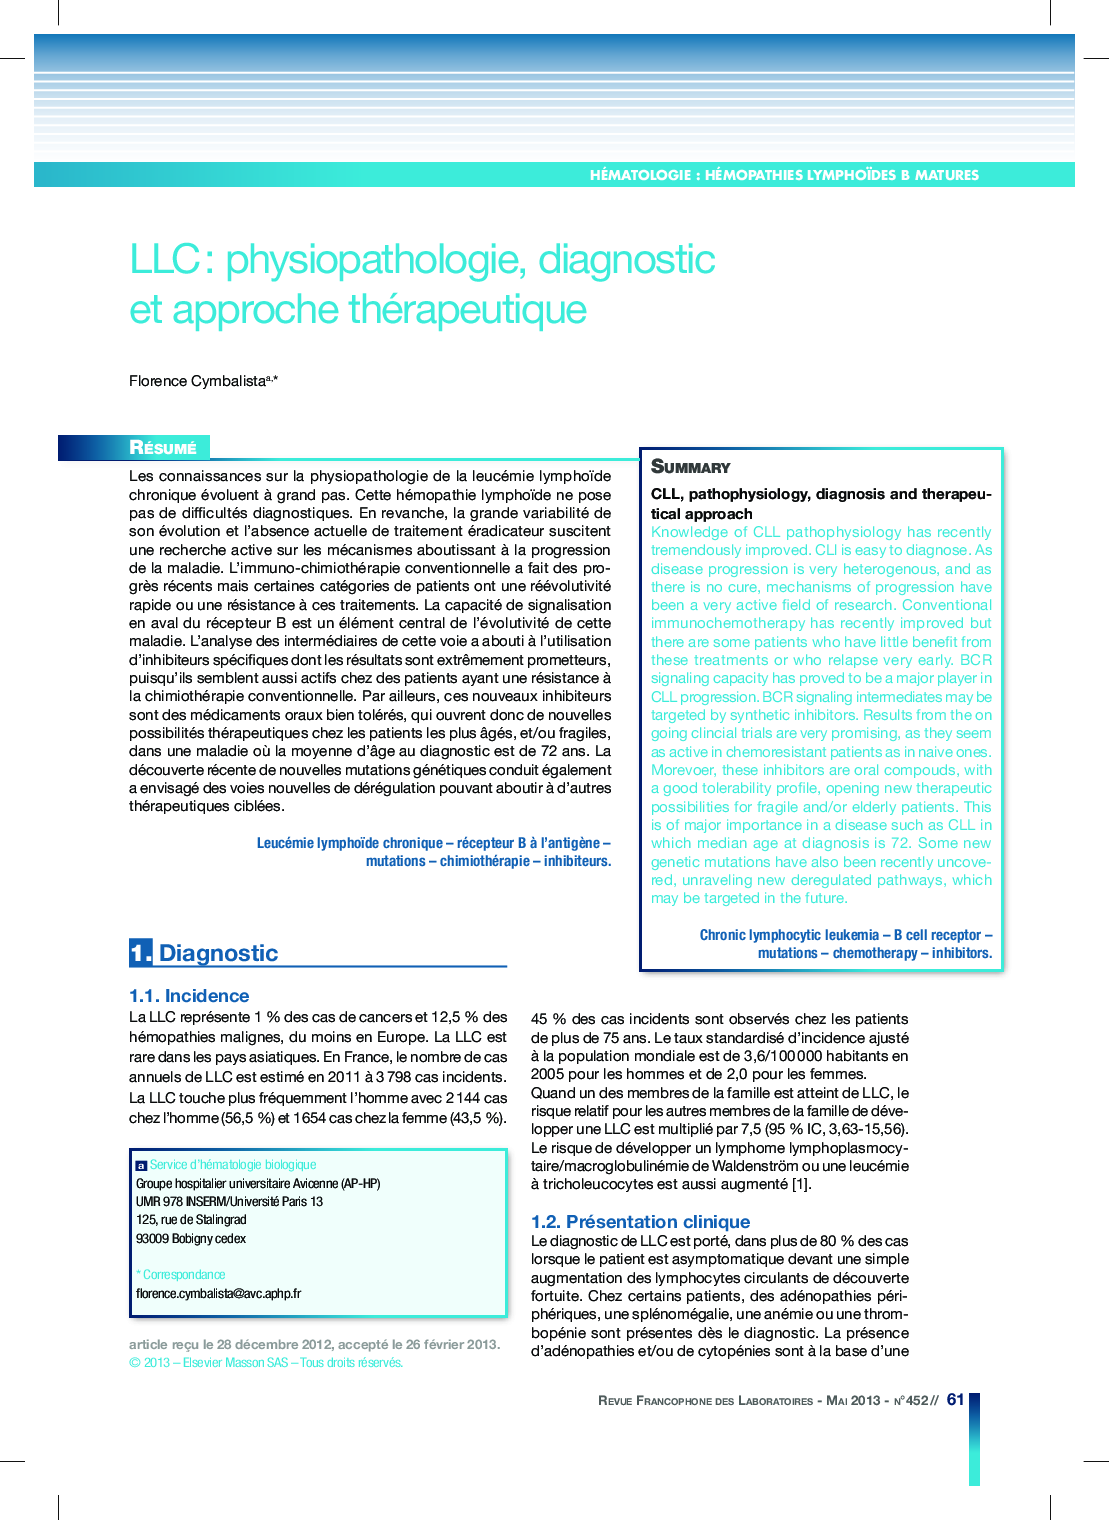 LLC: physiopathologie, diagnostic et approche thérapeutique